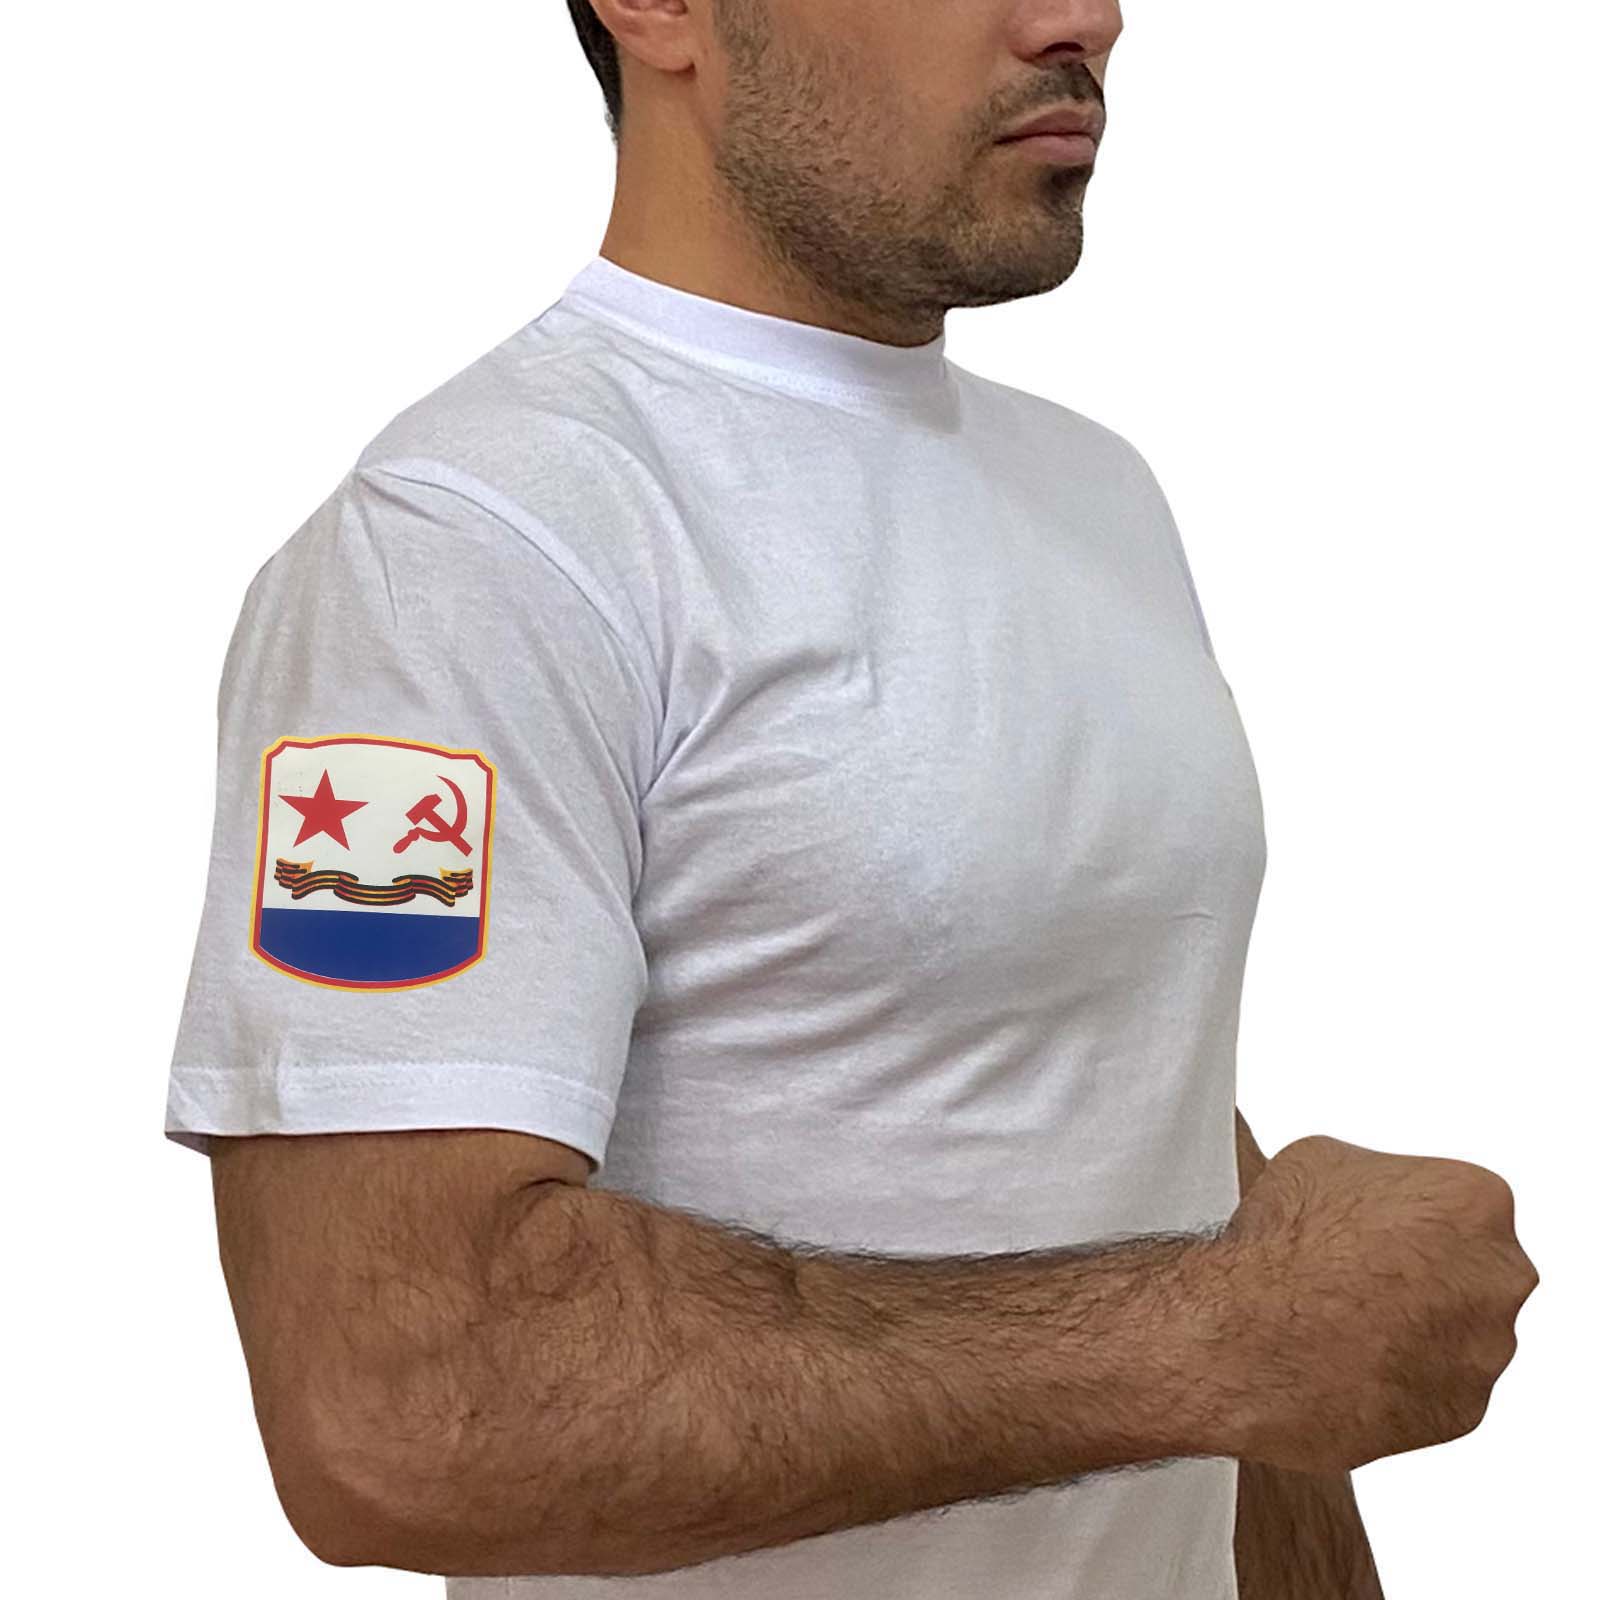 Купить стильную белую футболку с термотрансфером Флаг ВМФ СССР онлайн